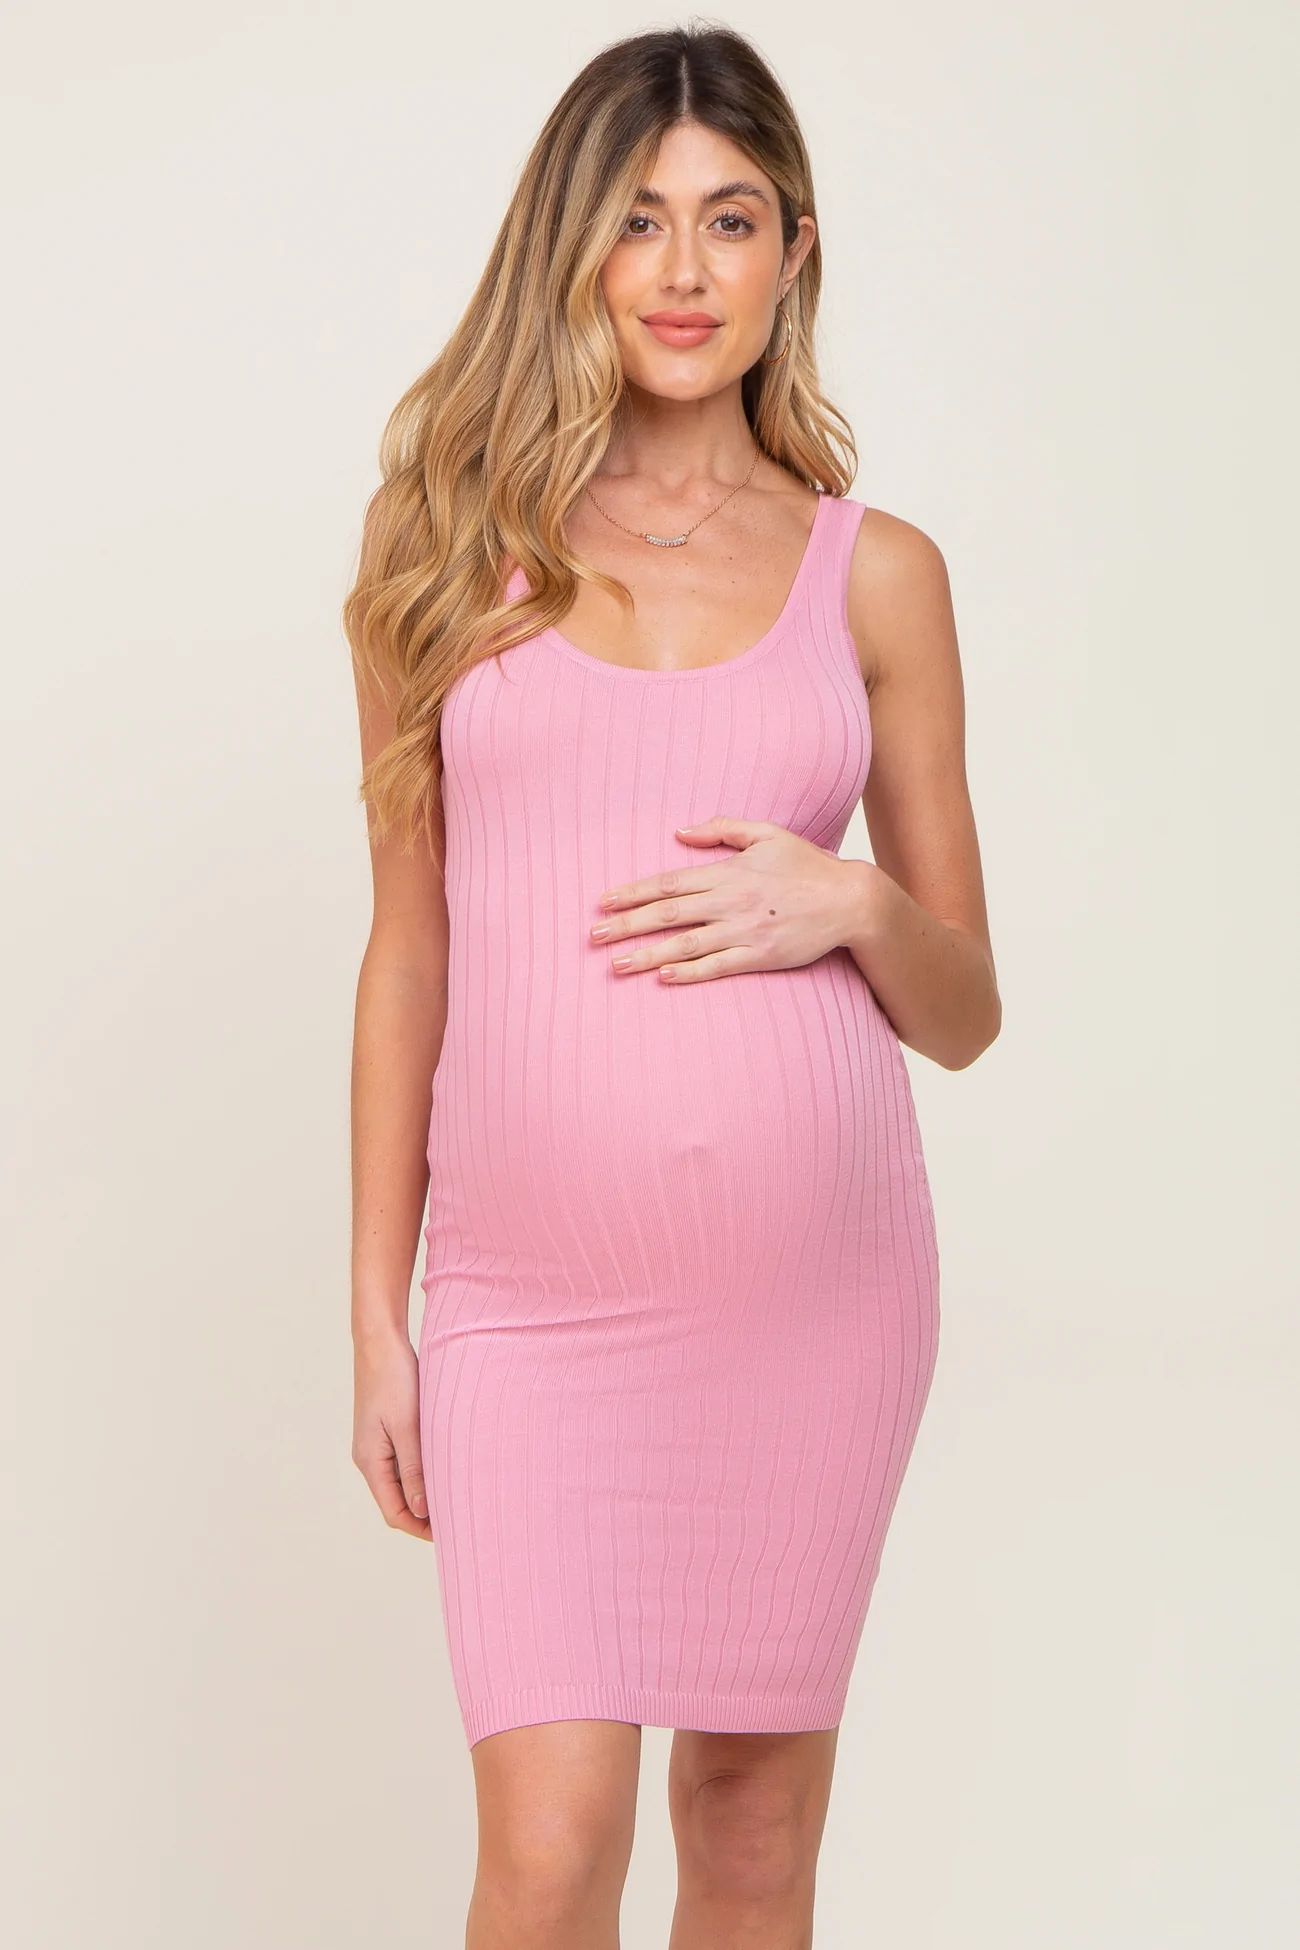 Pink Rib Knit Sleeveless Maternity Dress | PinkBlush Maternity